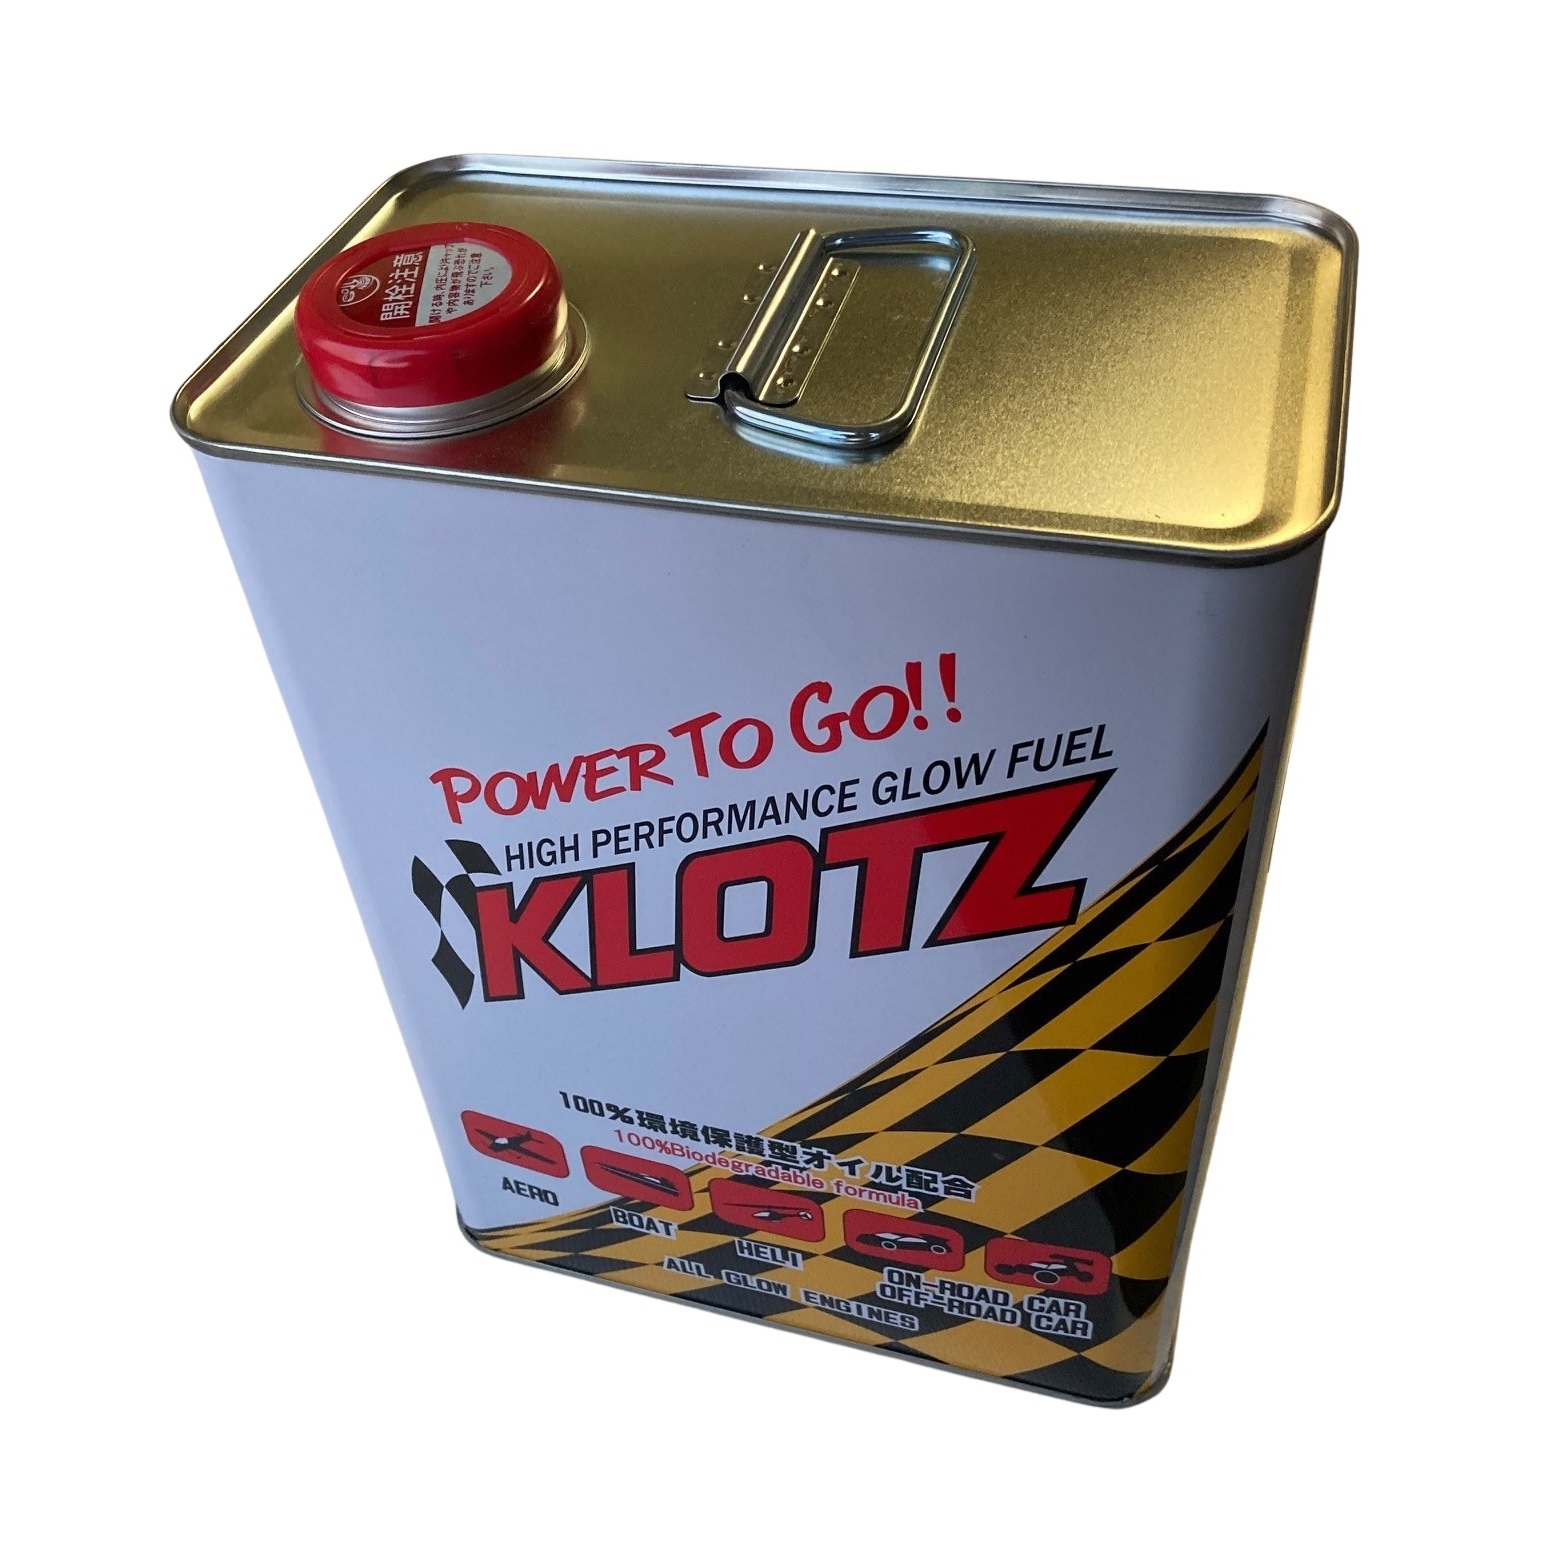 KLOTZ グロー燃料 エアースペシャル15 4L - ウインドウを閉じる